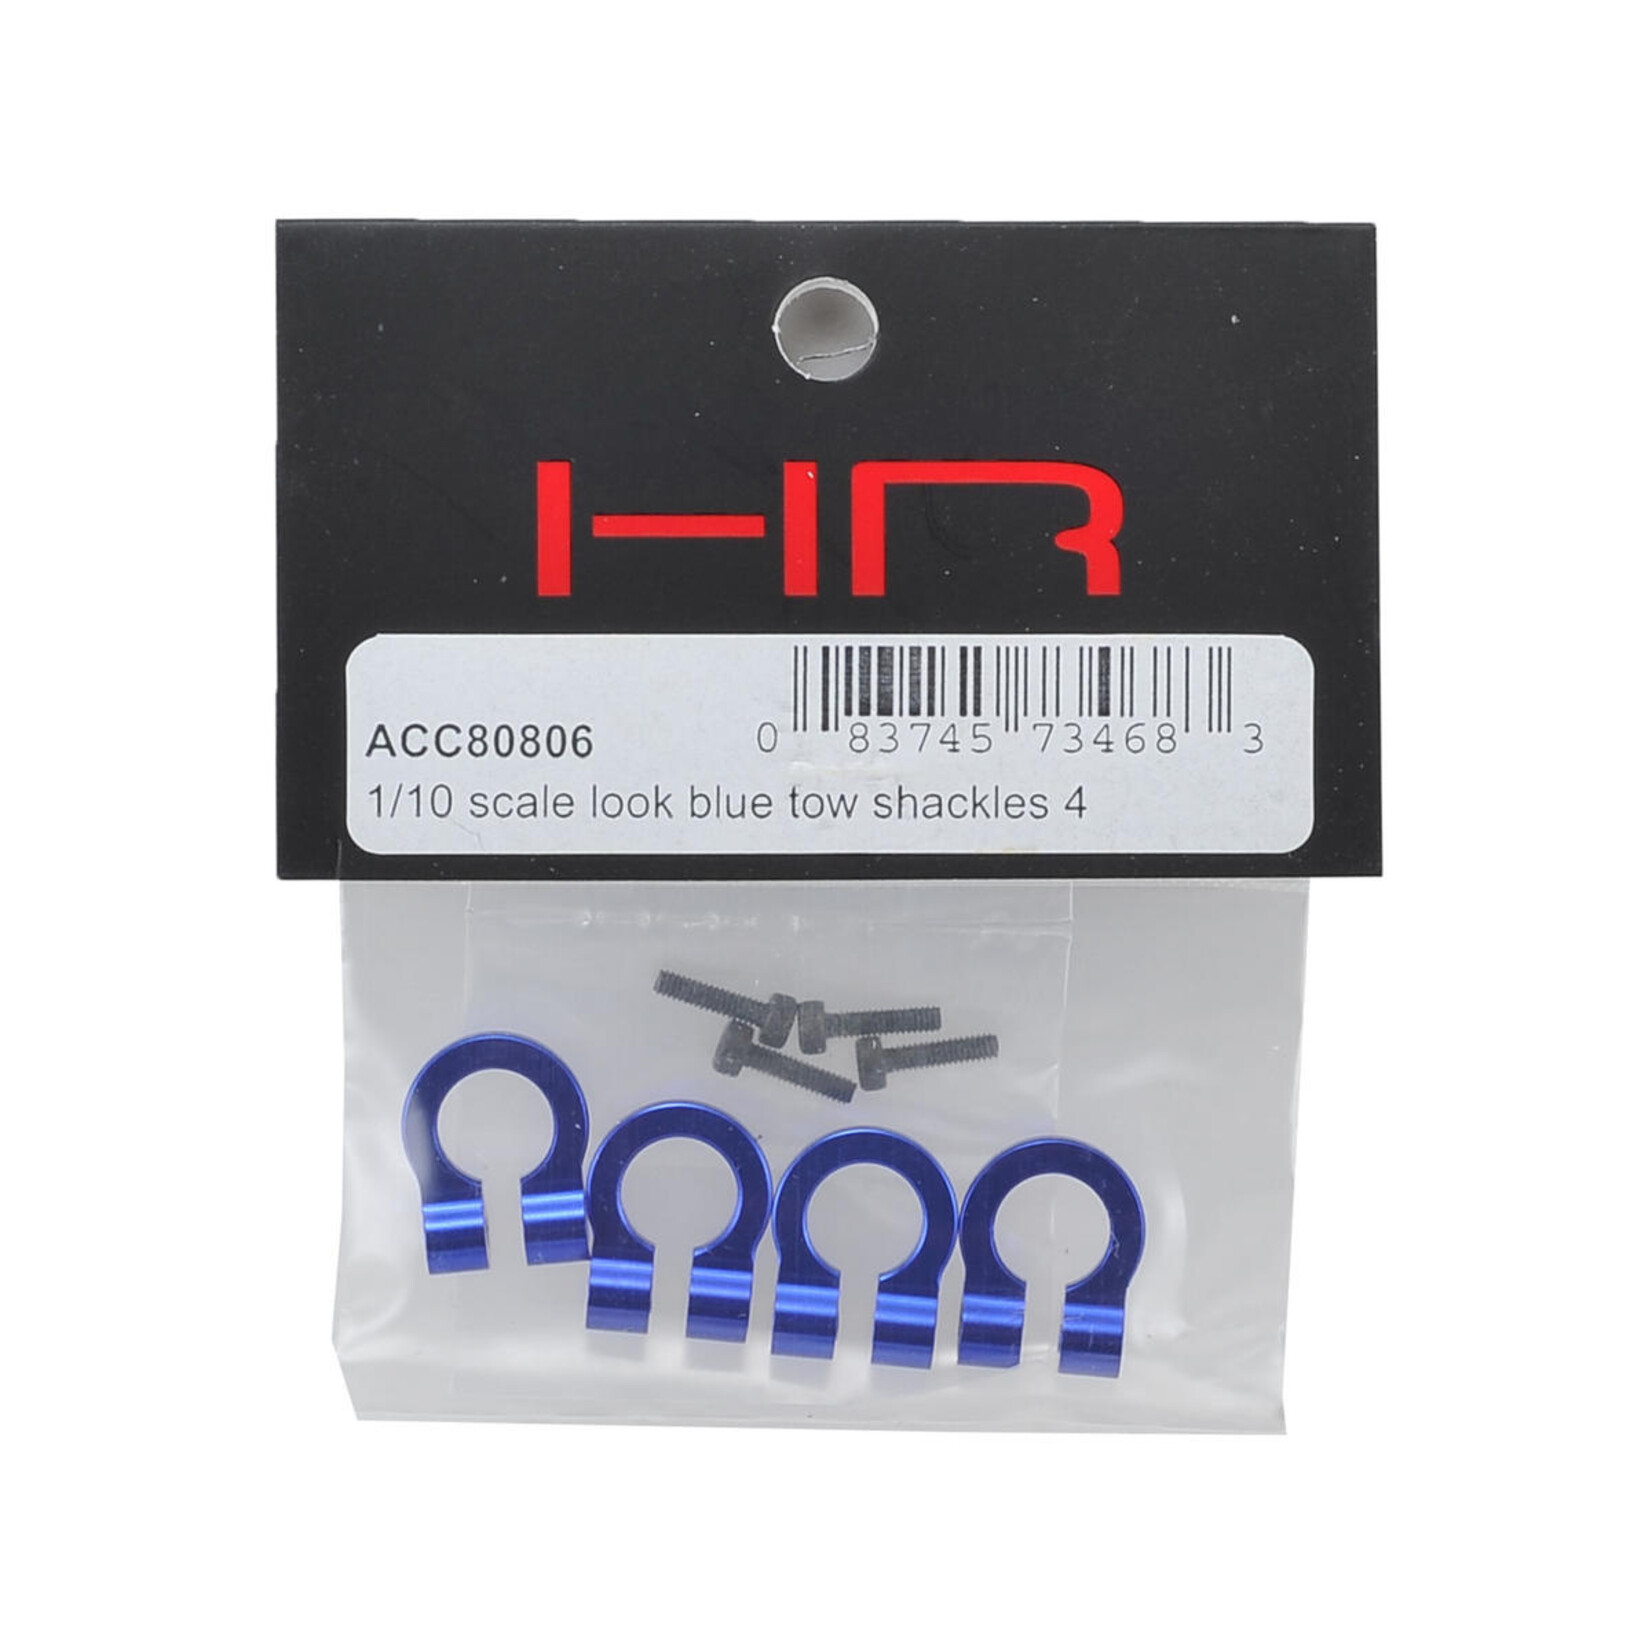 Hot Racing Hot Racing 1/10 Aluminum Tow Shackle D-Rings (Blue) (4) #ACC80806